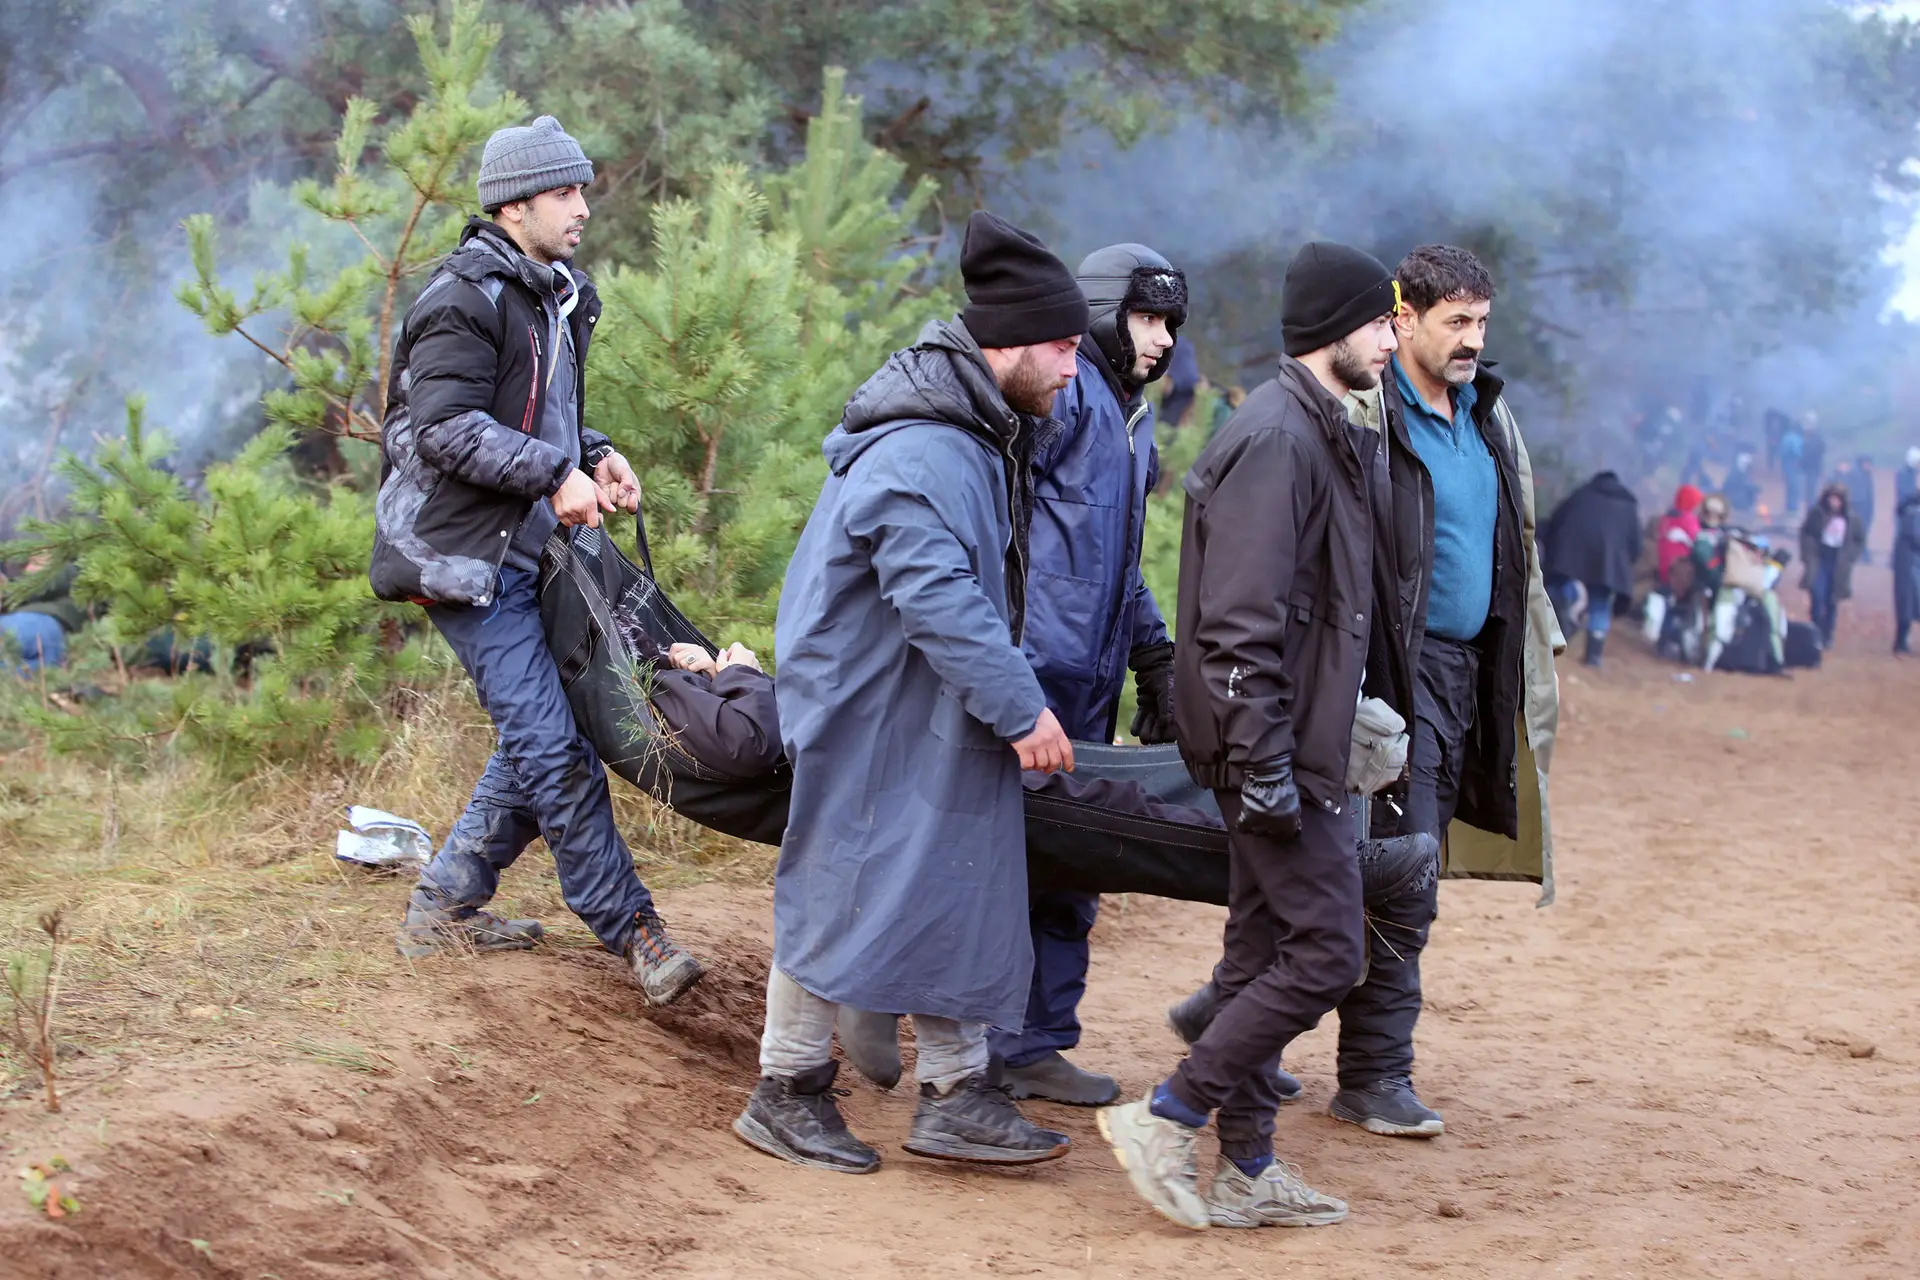 Migrantes carregam pessoa em maca para ajuntamento na fronteira da Bielorrússia com a Polónia